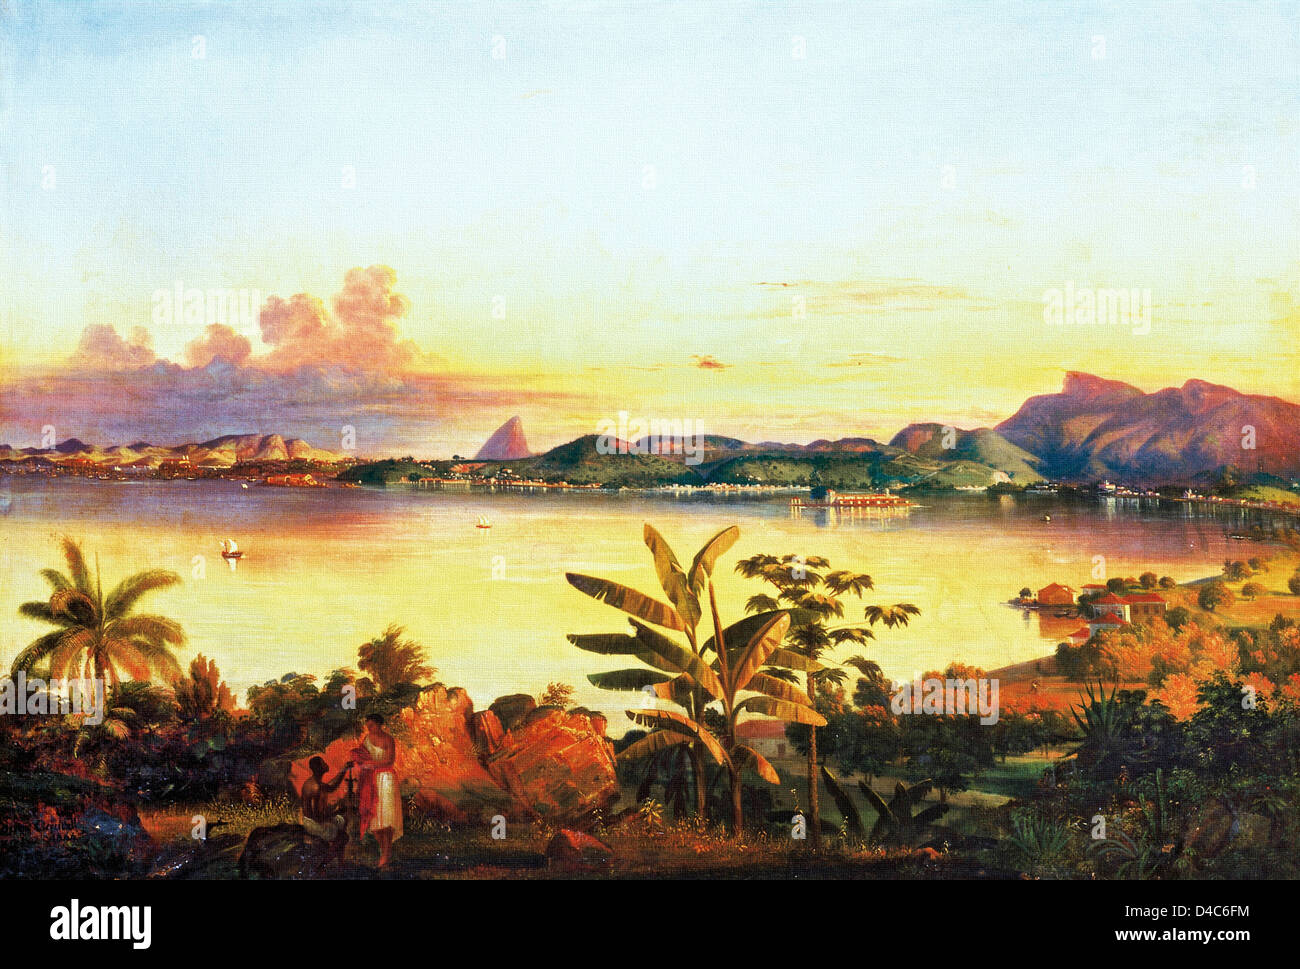 Alessandro Ciccarelli, Rio de Janeiro 1844 Oil on canvas. Pinacoteca do Estado de Sao Paulo, Brazil Stock Photo